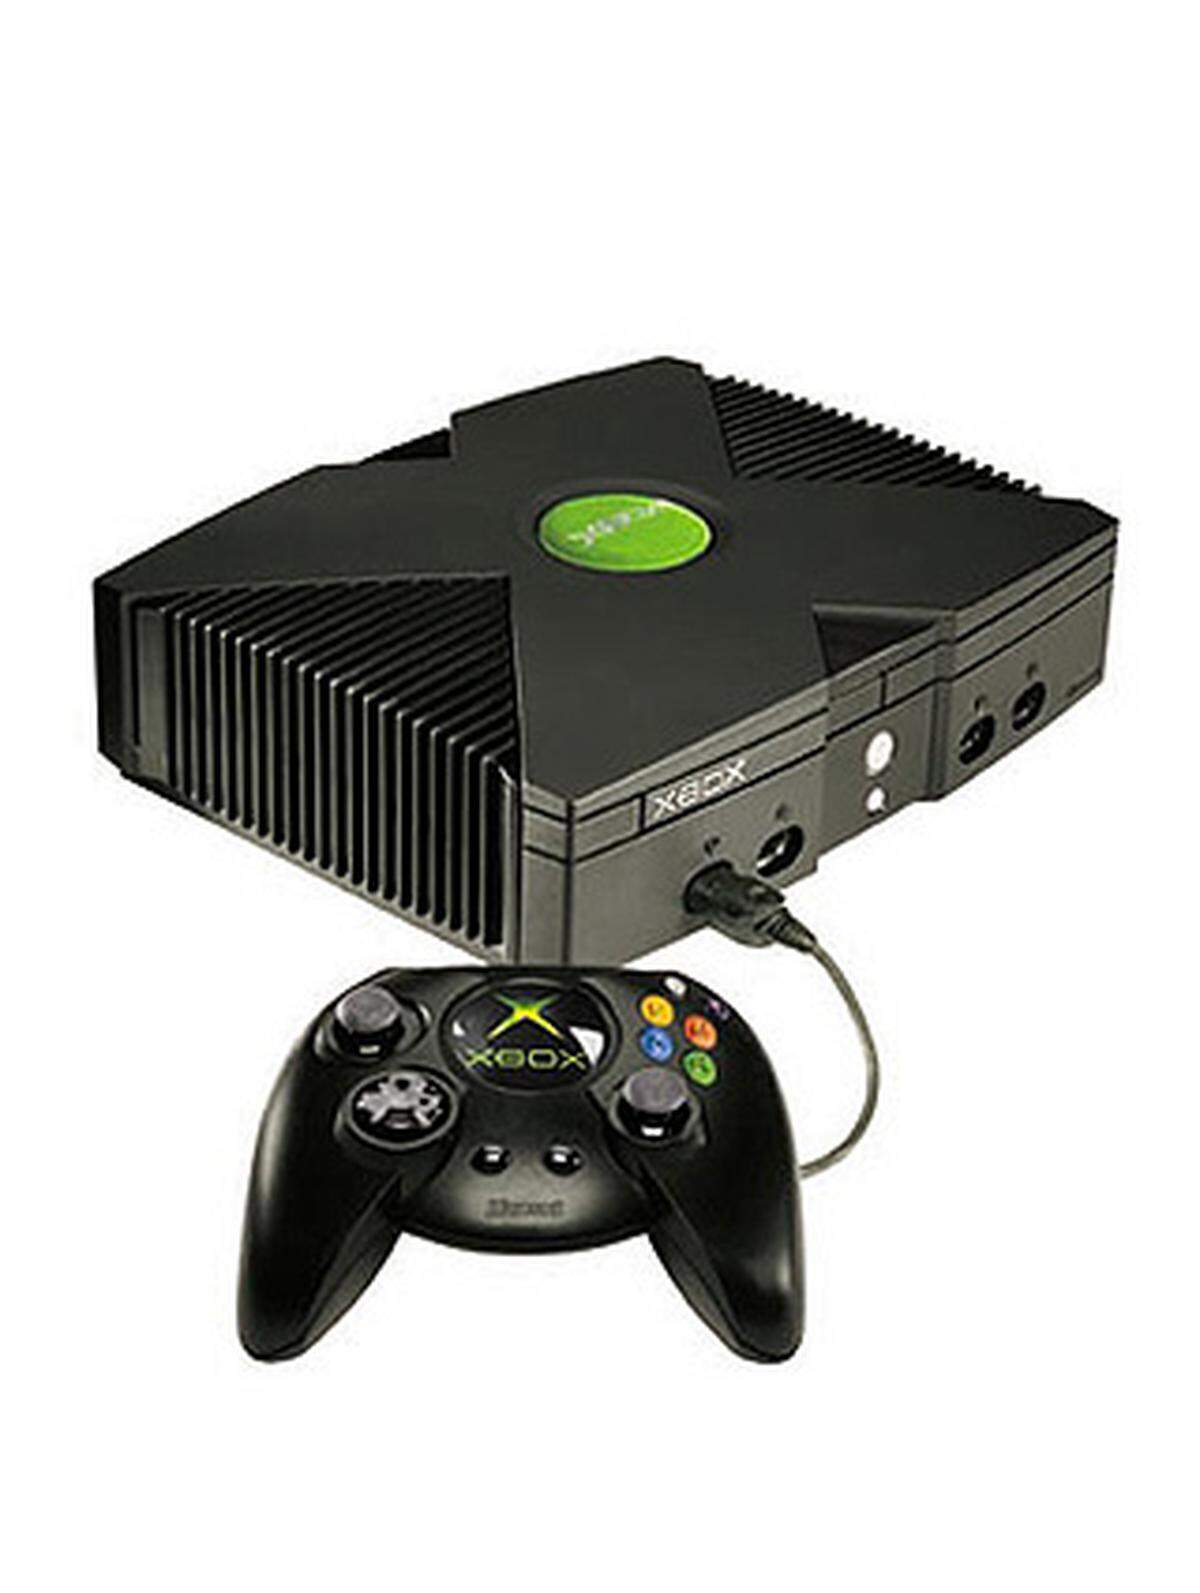 ... bis Microsoft die Xbox veröffentlichte, die - technisch betrachtet - eigentlich nur ein PC in einem Konsolengehäuse ist.  Darum ist es auch möglich die Konsole -beispielsweise mit speziellen Linux-Versionen - zum vollwertigen PC umzurüsten.